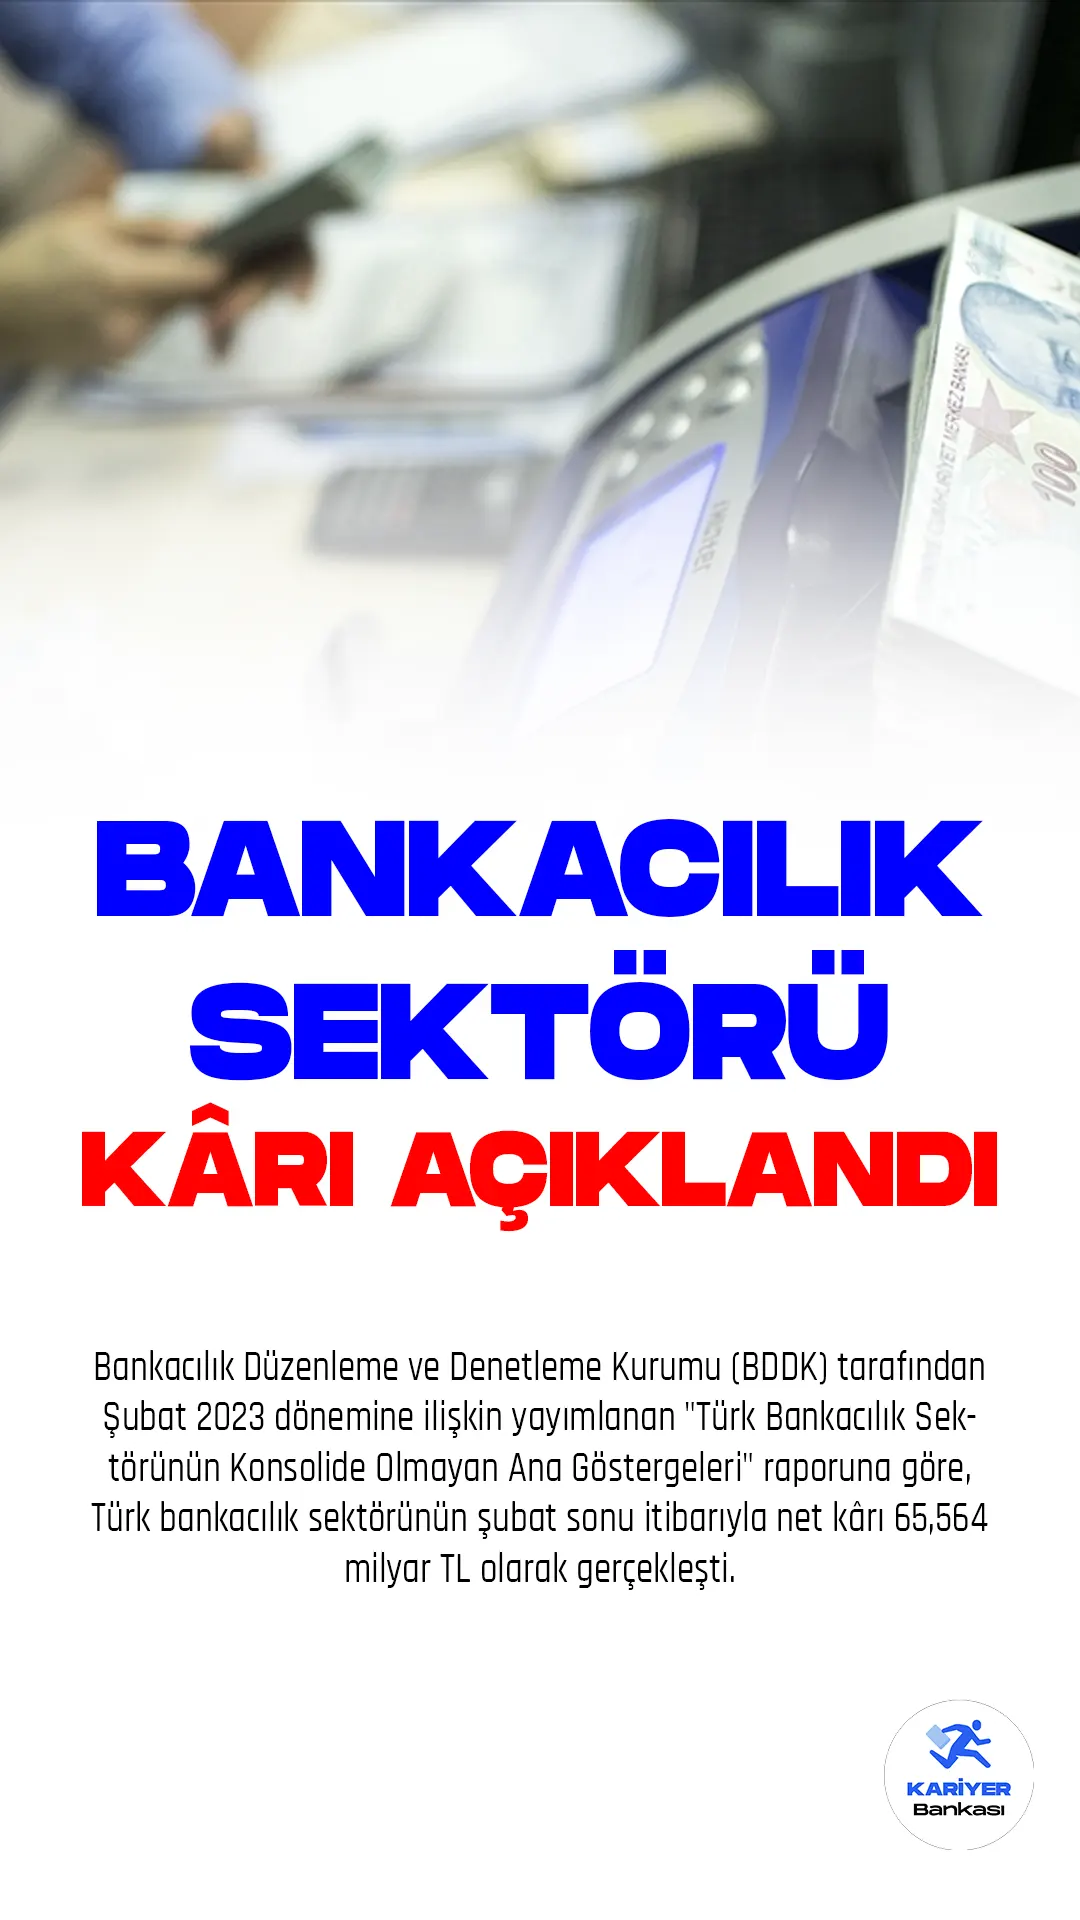 Bankacılık Düzenleme ve Denetleme Kurumu (BDDK) tarafından Şubat 2023 dönemine ilişkin yayımlanan "Türk Bankacılık Sektörünün Konsolide Olmayan Ana Göstergeleri" raporuna göre, Türk bankacılık sektörünün şubat sonu itibarıyla net kârı 65,564 milyar TL olarak gerçekleşti. Sektörün aktif büyüklüğü ise 15,3 trilyon TL olarak kaydedildi.